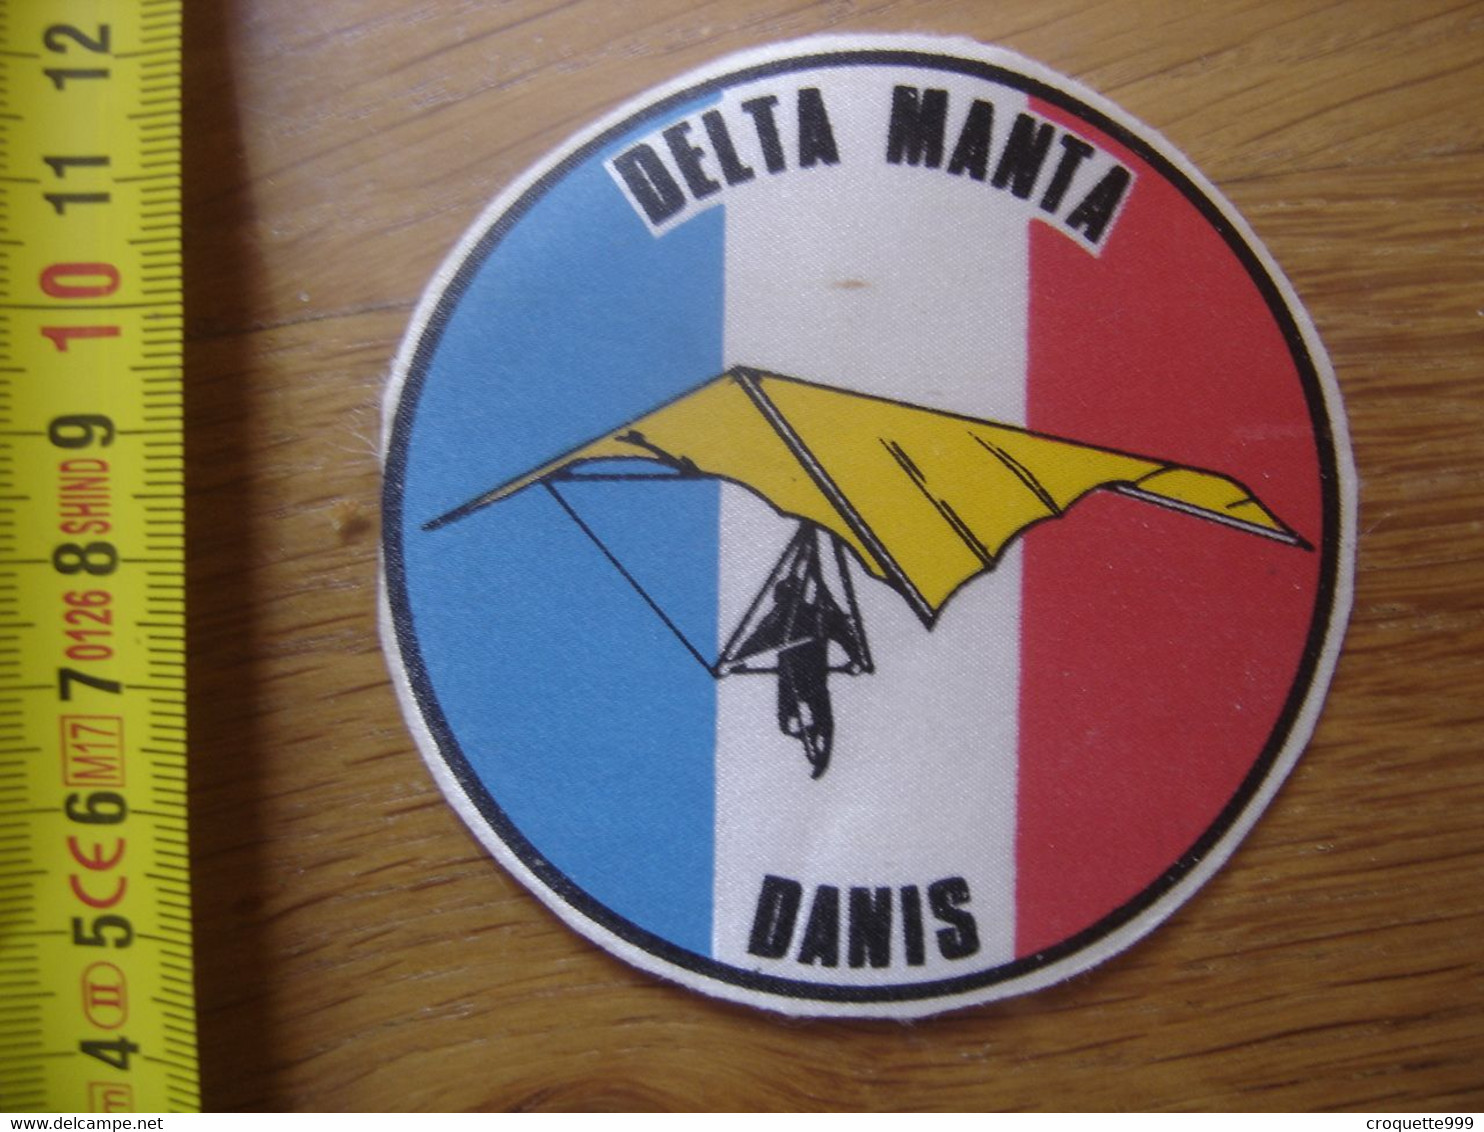 Ecusson Patch DELTA MANTA DANIS Bleu Blanc Rouge - Paracadutismo